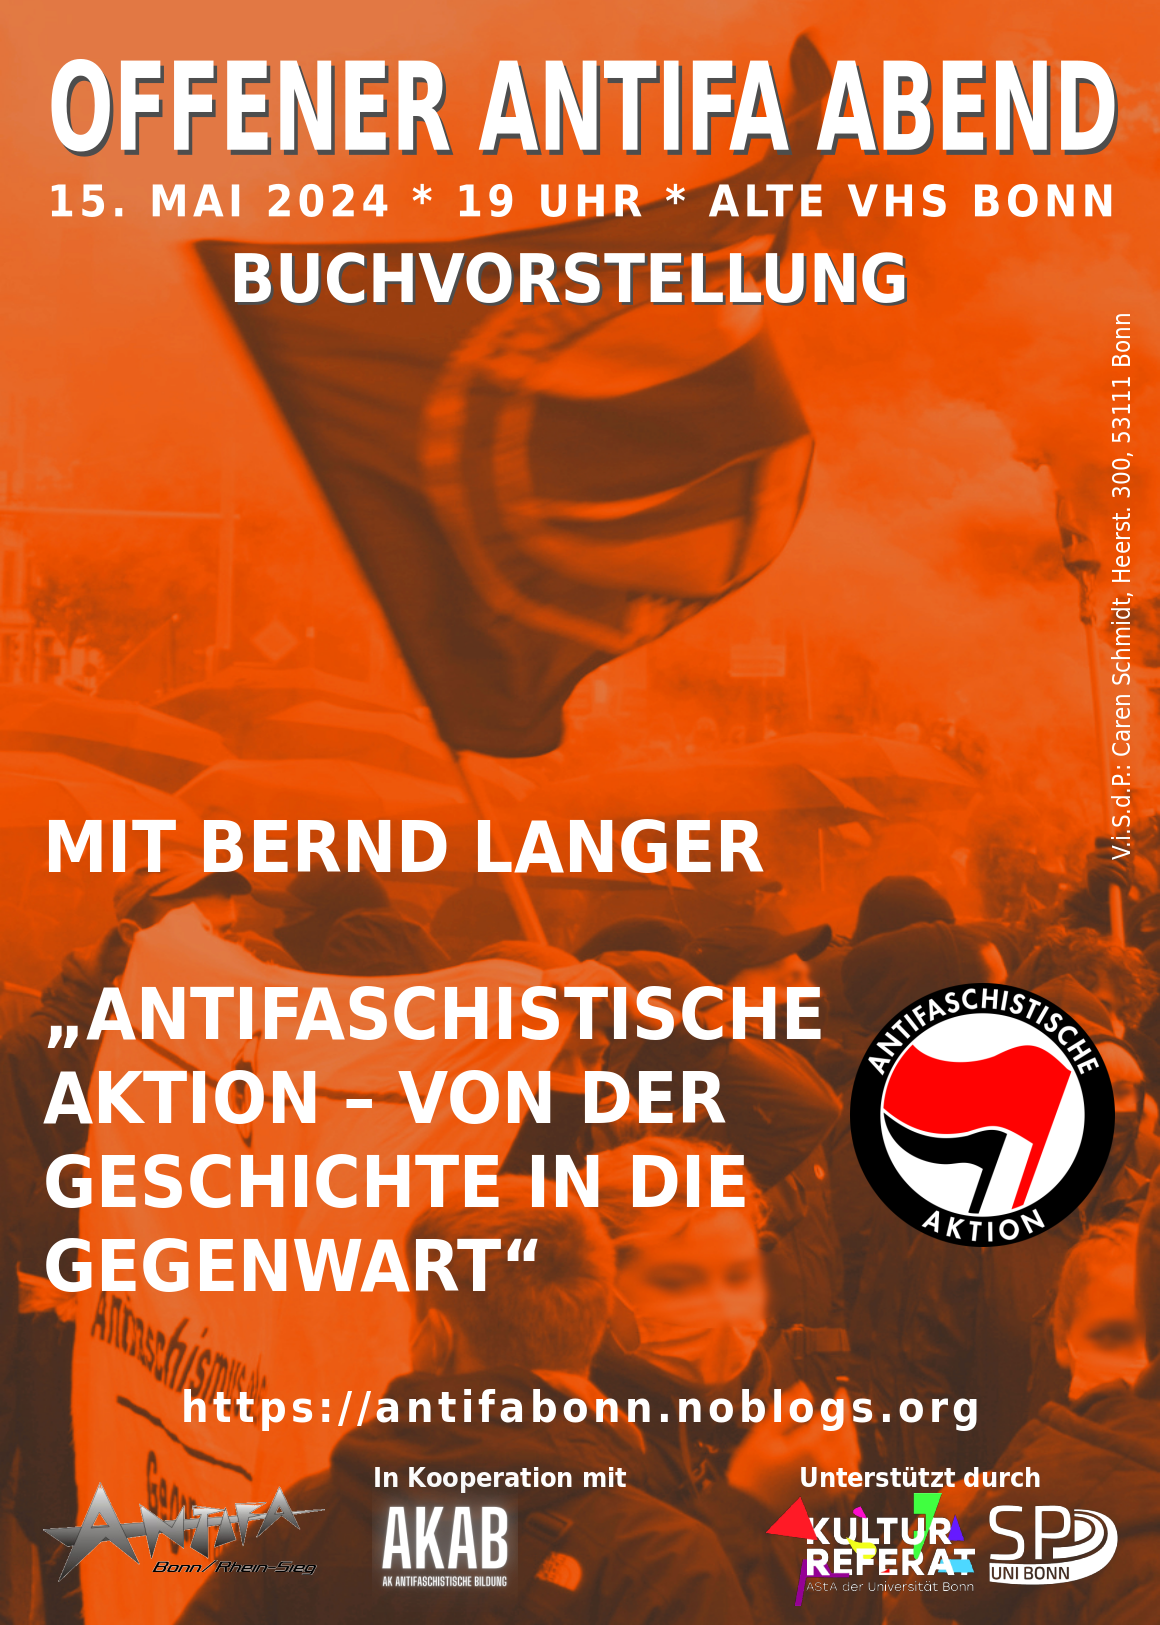 Offener Antifa Abend – Buchvorstellung »Antifaschistischen Aktion von der Geschichte in die Gegenwart« mit Bernd Langer (15.05.2024)